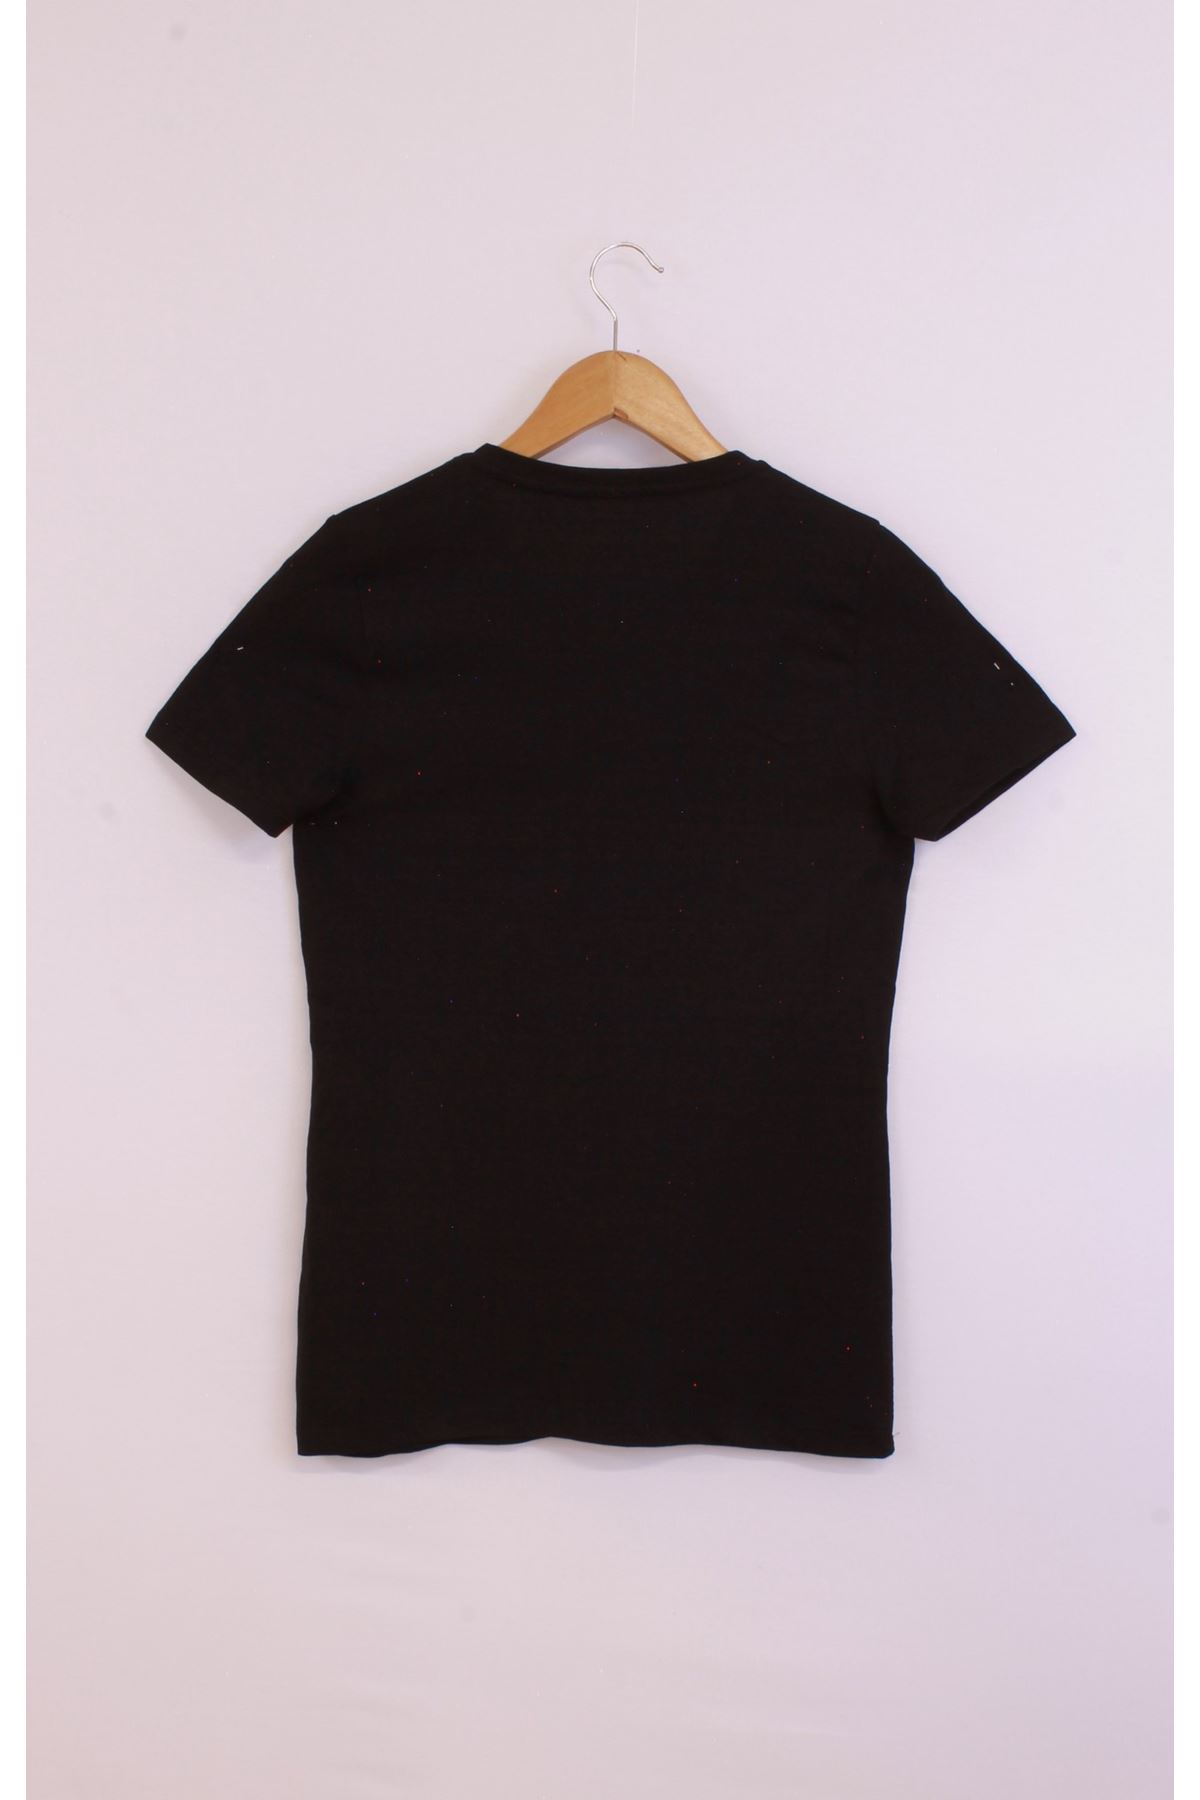 Giyinsen Kadın Siyah Tişört - 23YL71595017